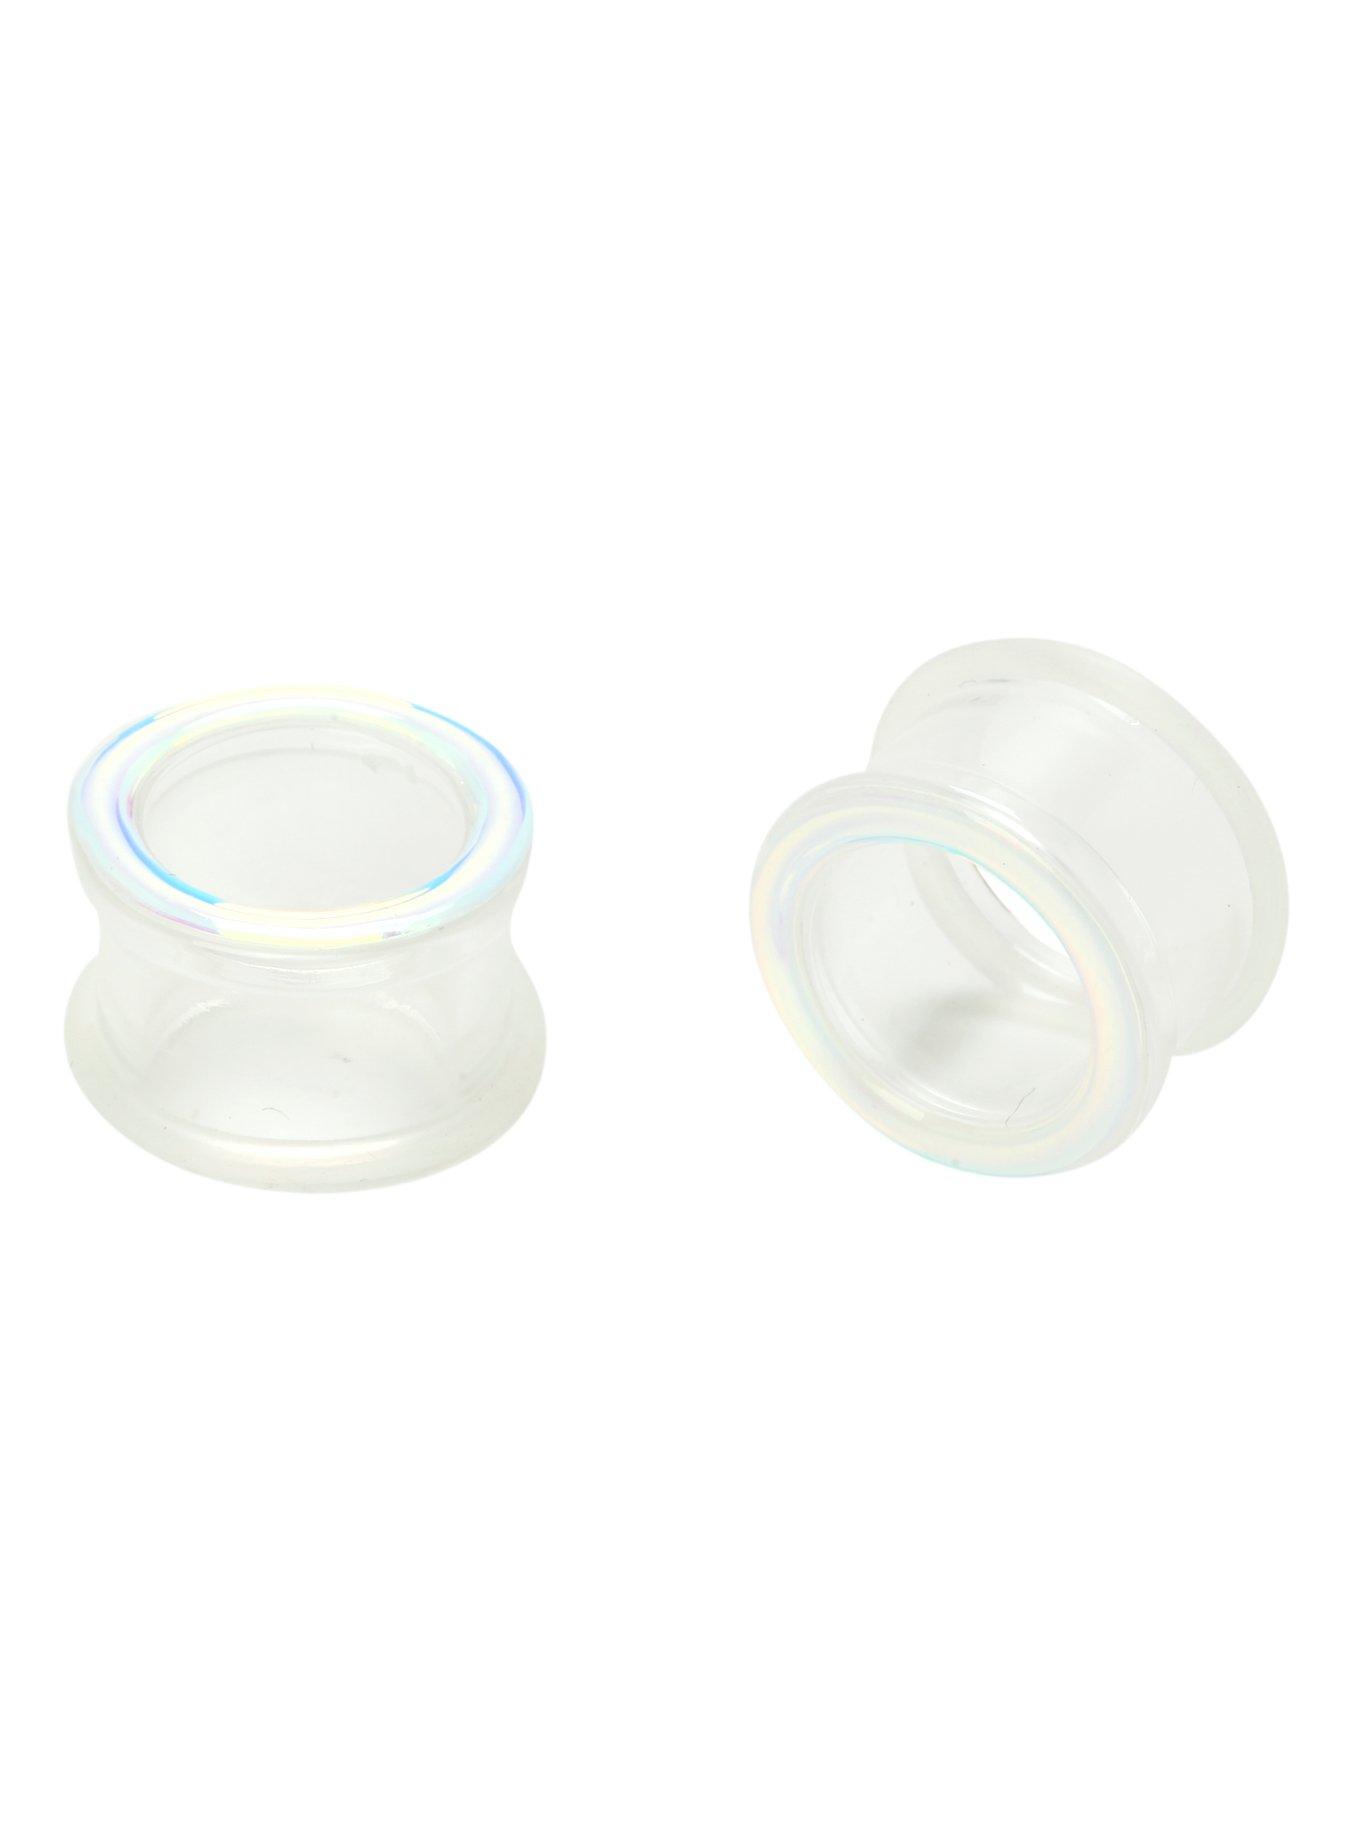 Acrylic Iridescent Clear Eyelet Saddle Plug 2 Pack, , hi-res